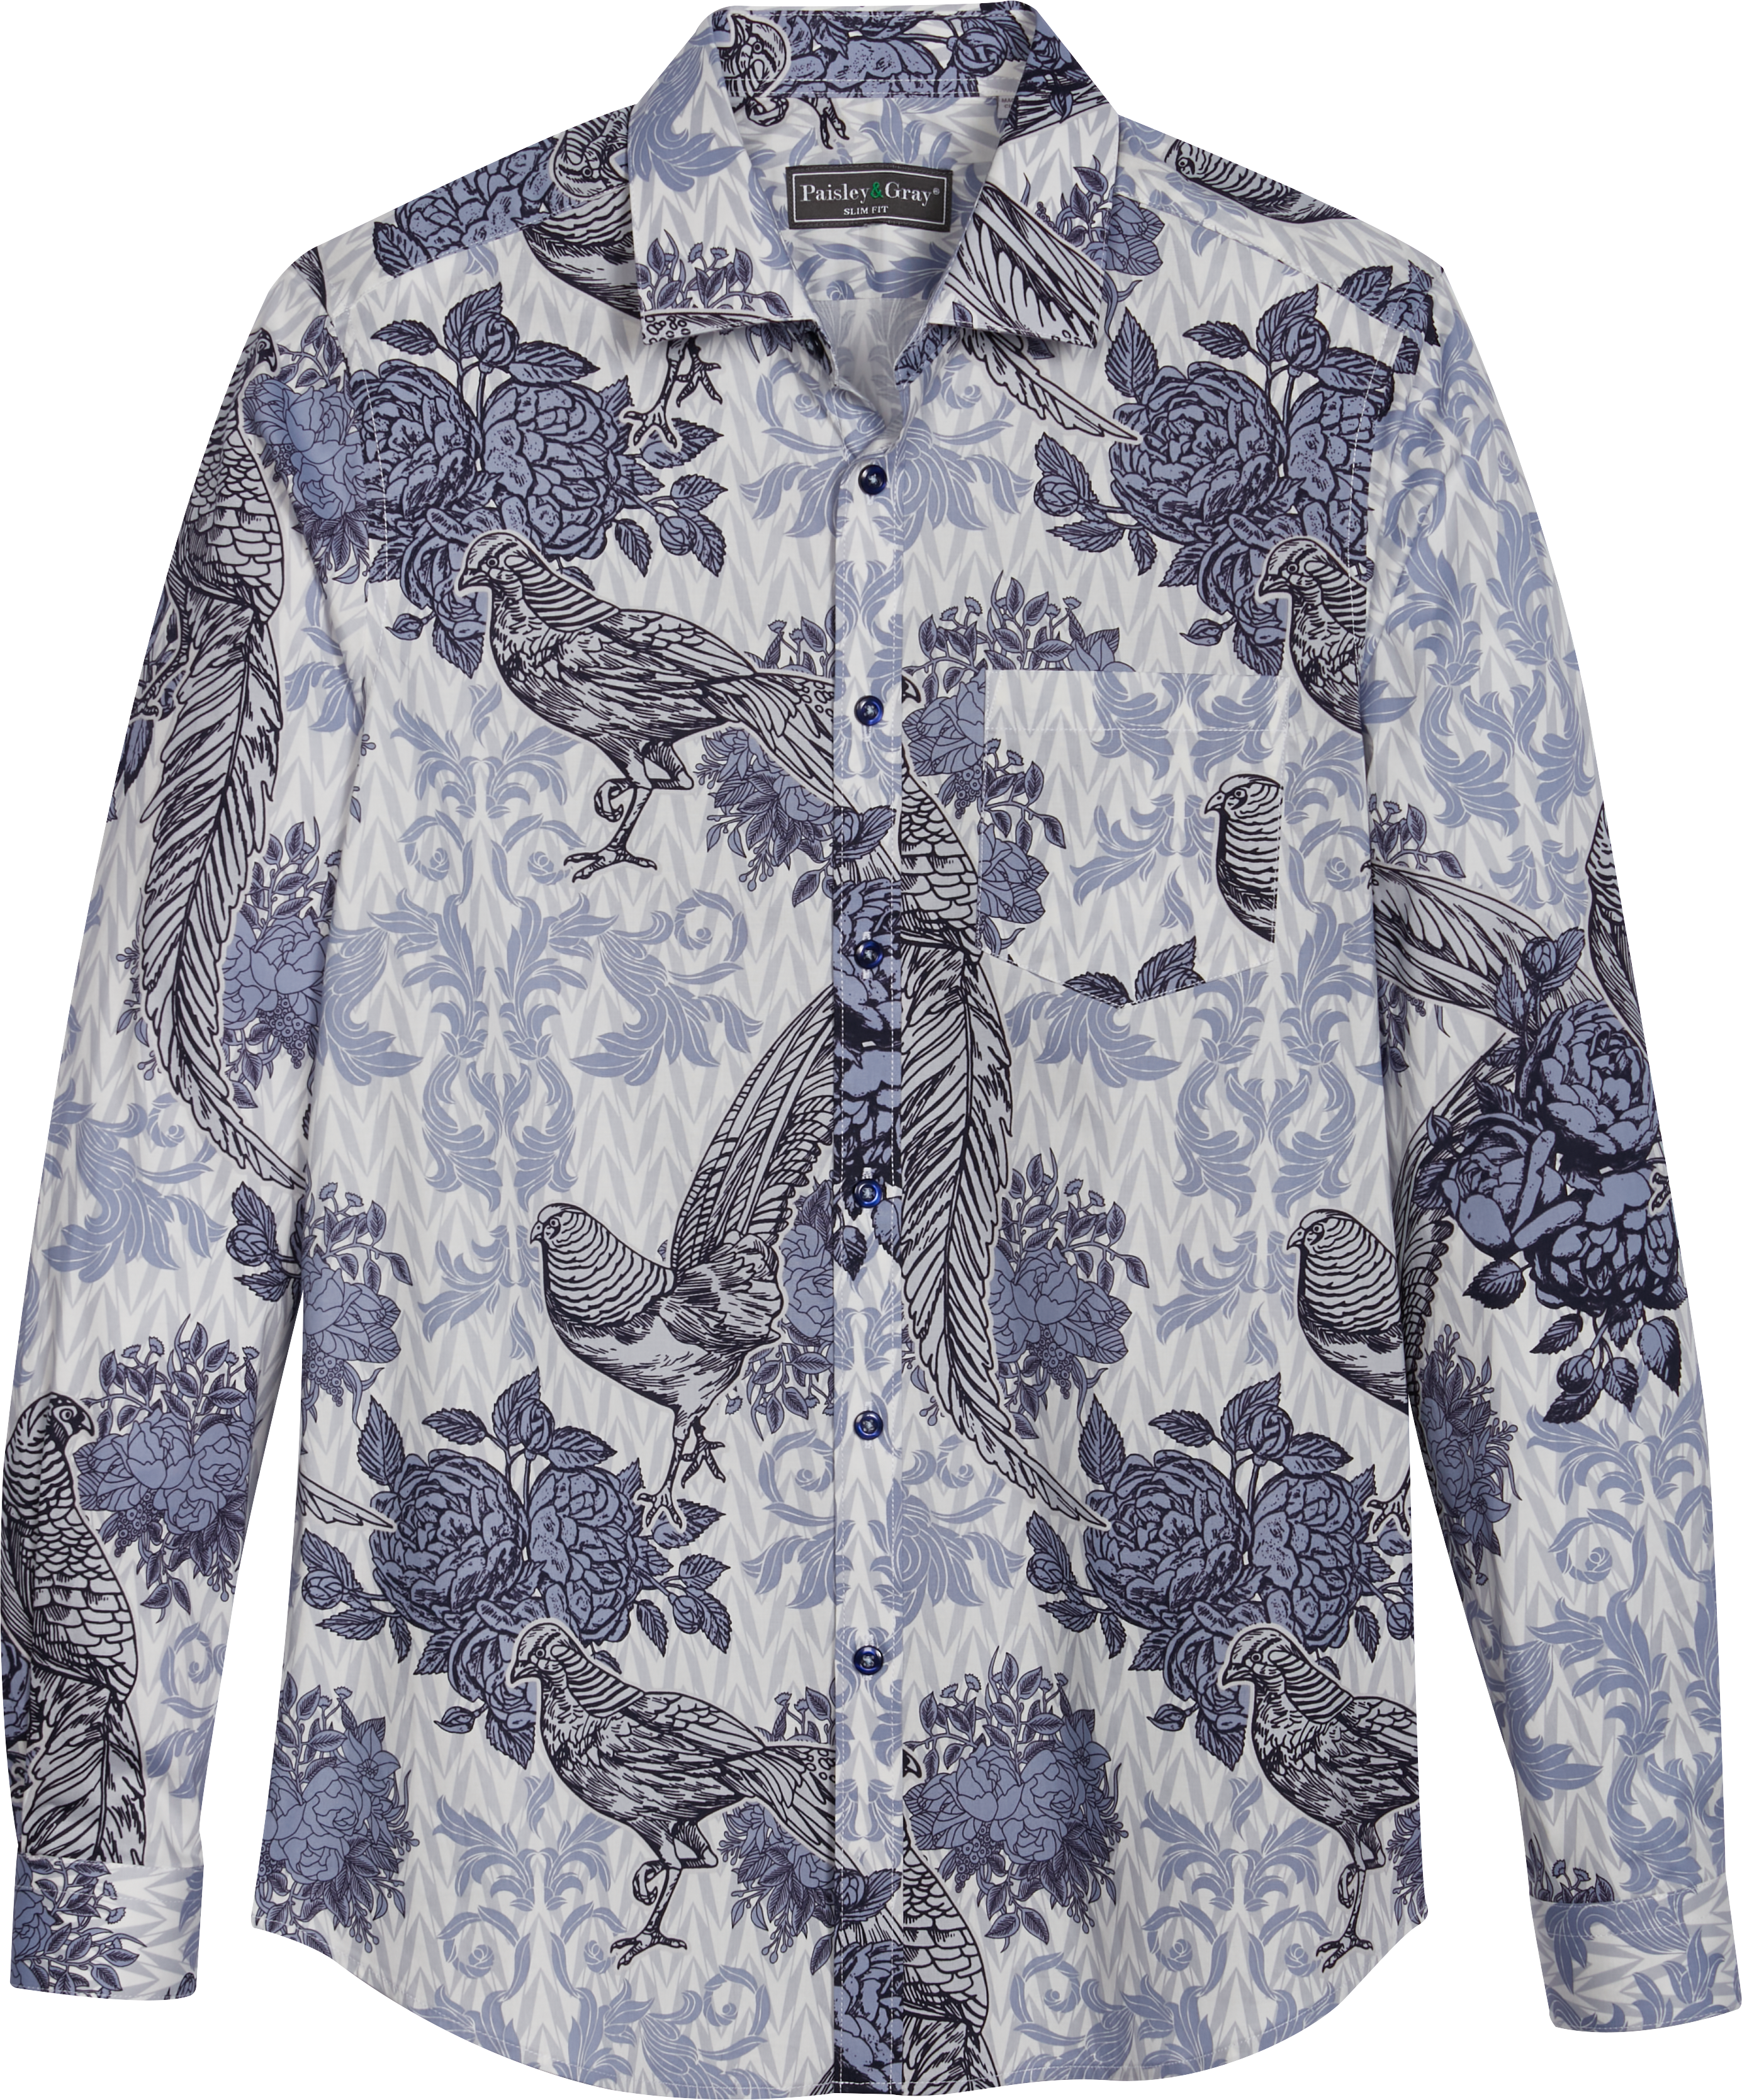 Cotton Button Front Shirt - Delicate Paisley